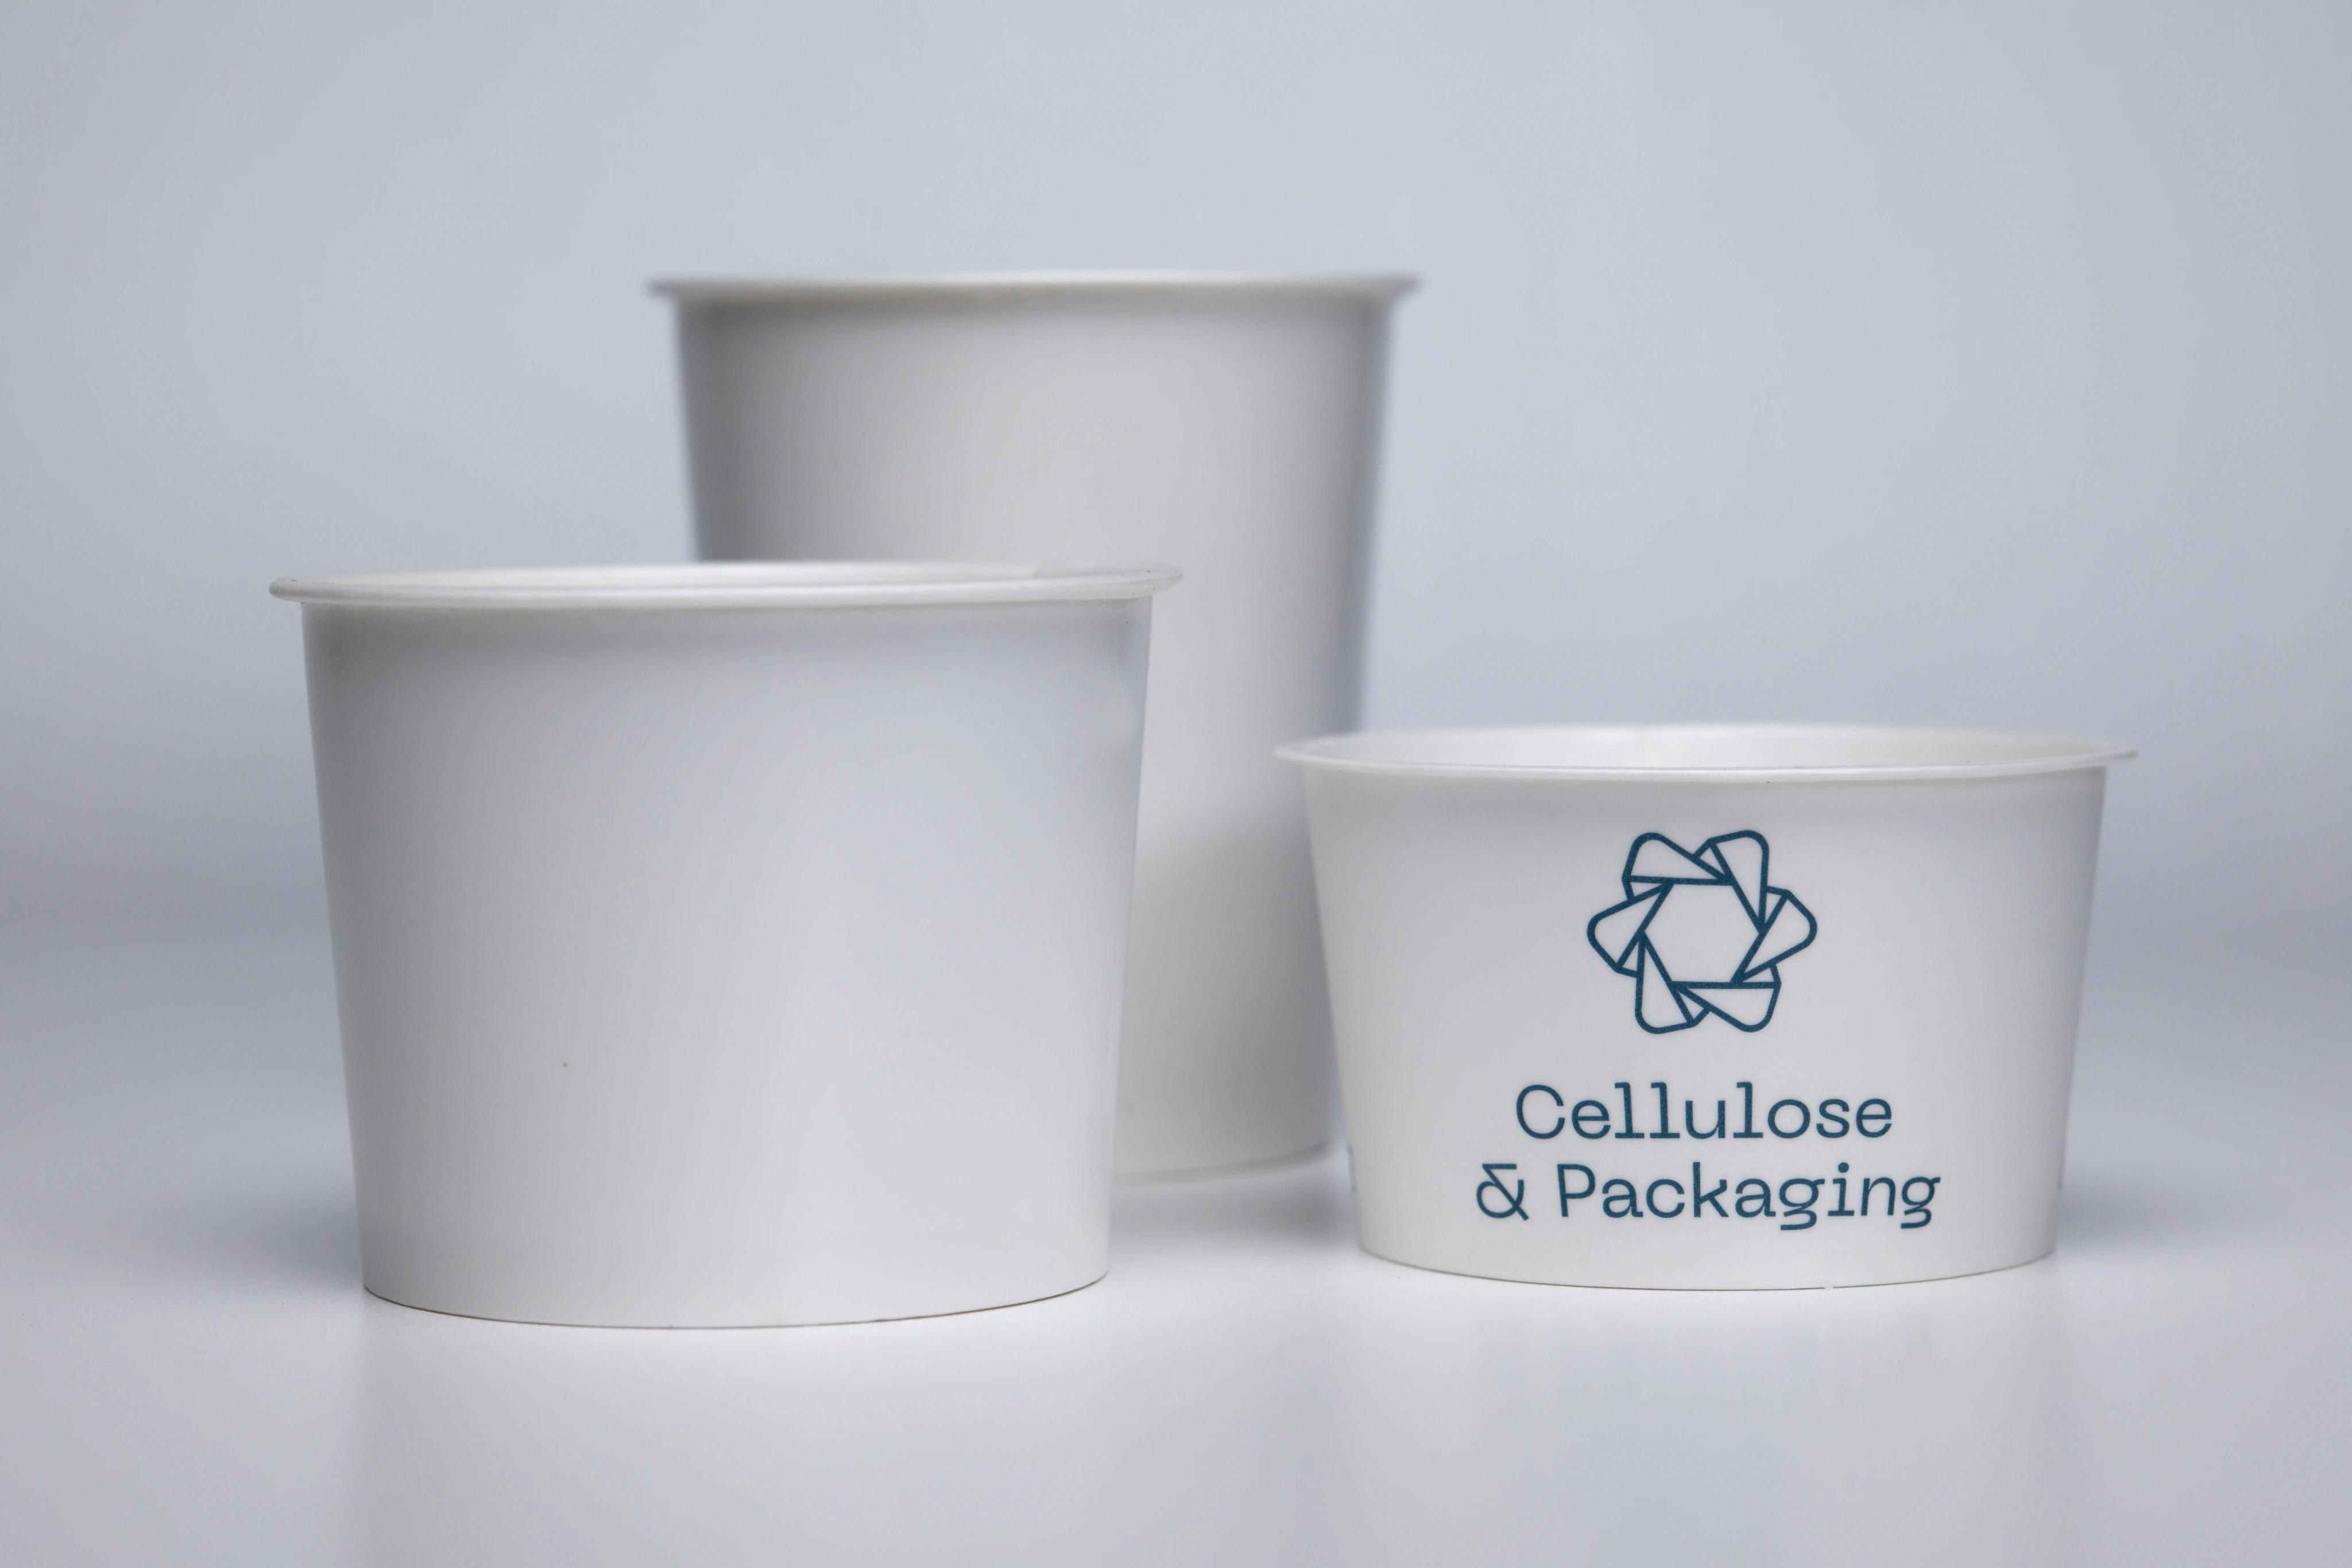 Cellulose & Packaging - Image présentation de gamme